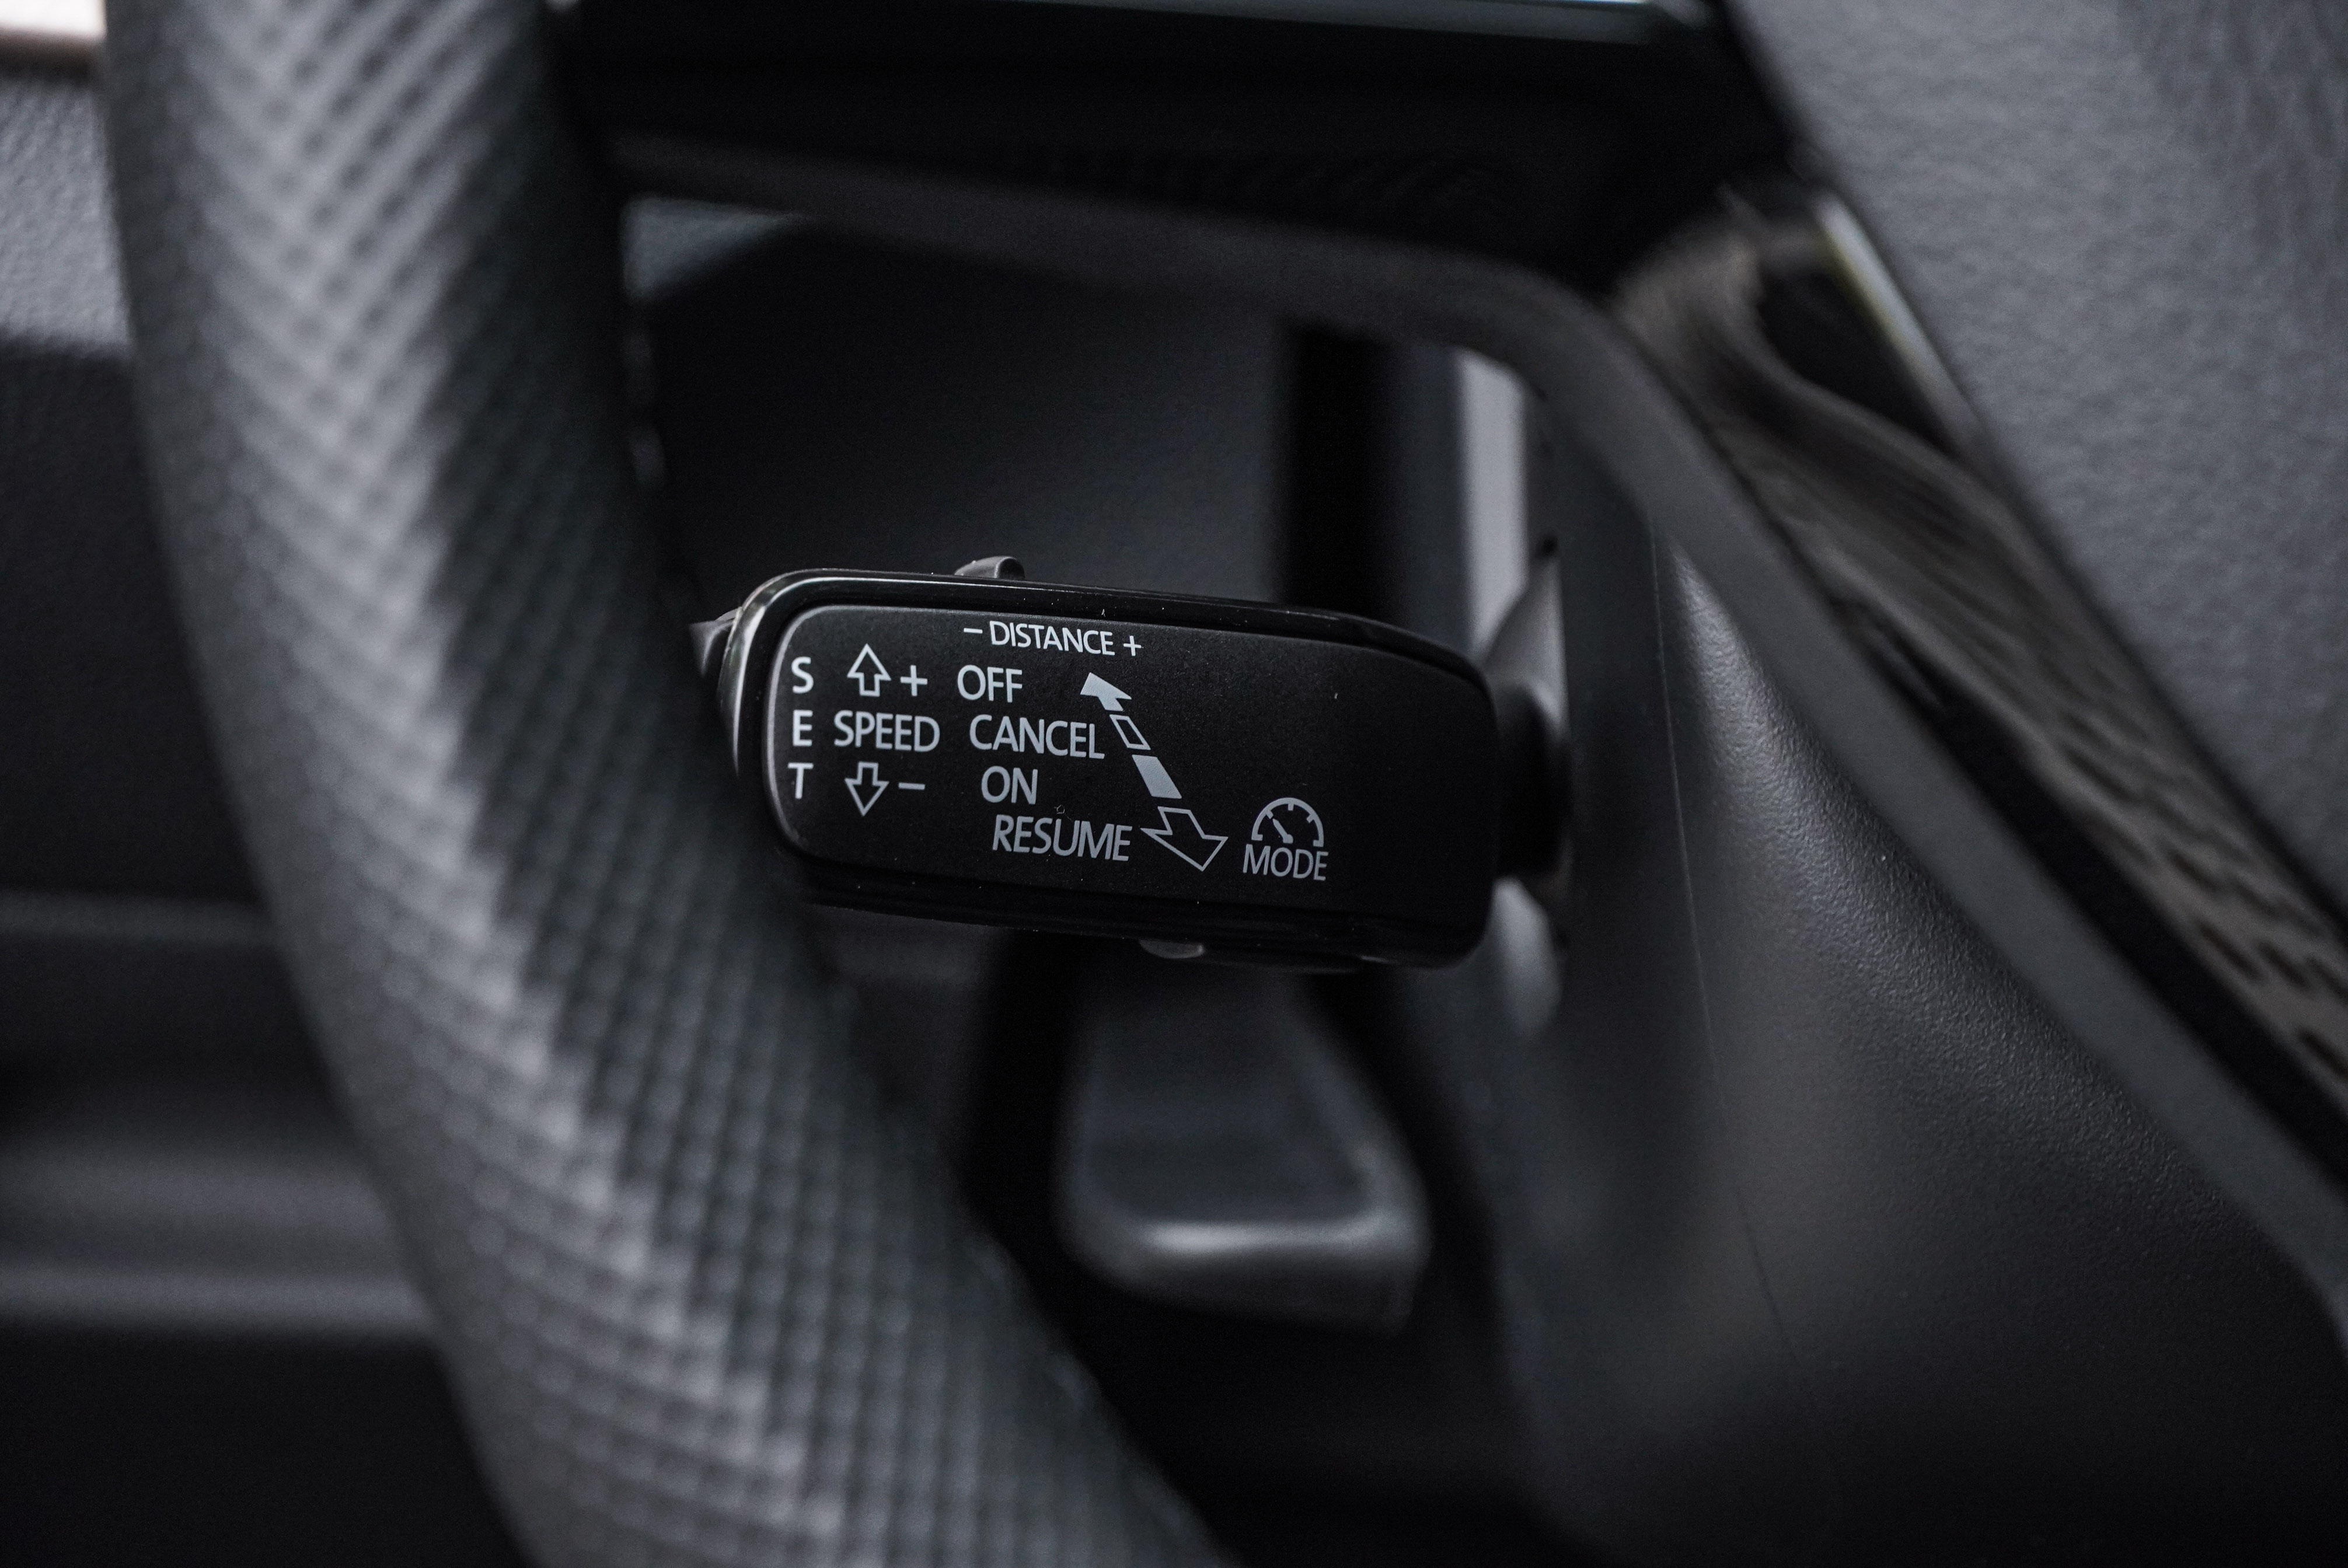 ACC 主動式定速跟車系統控制桿位於方向盤左後方，初次使用時容易誤觸方向燈桿。習慣後操控也算直覺。